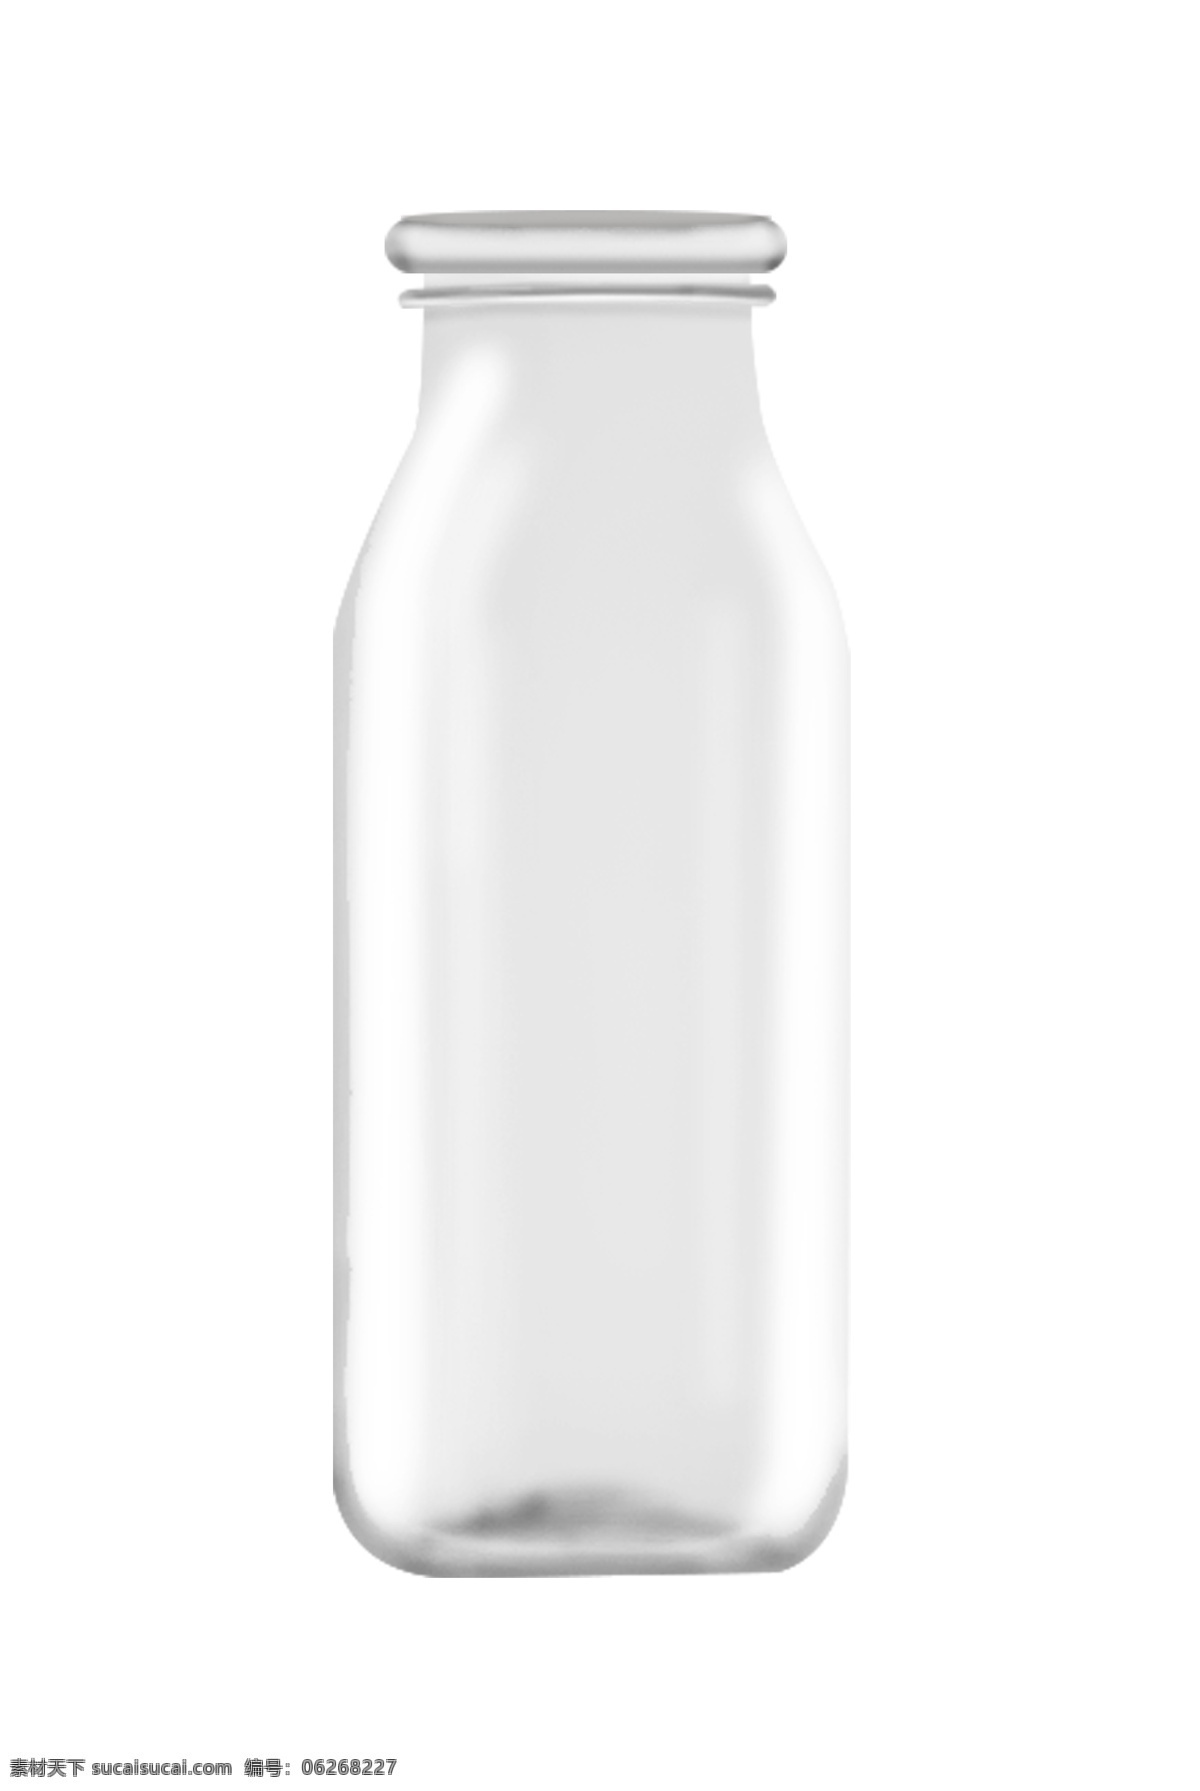 圆形 一体 玻璃 瓶子 插图 瓶子装饰 透明玻璃瓶子 瓶子创意 卡通插画 设计图案 装饰瓶子 白色瓶子 可爱的瓶子